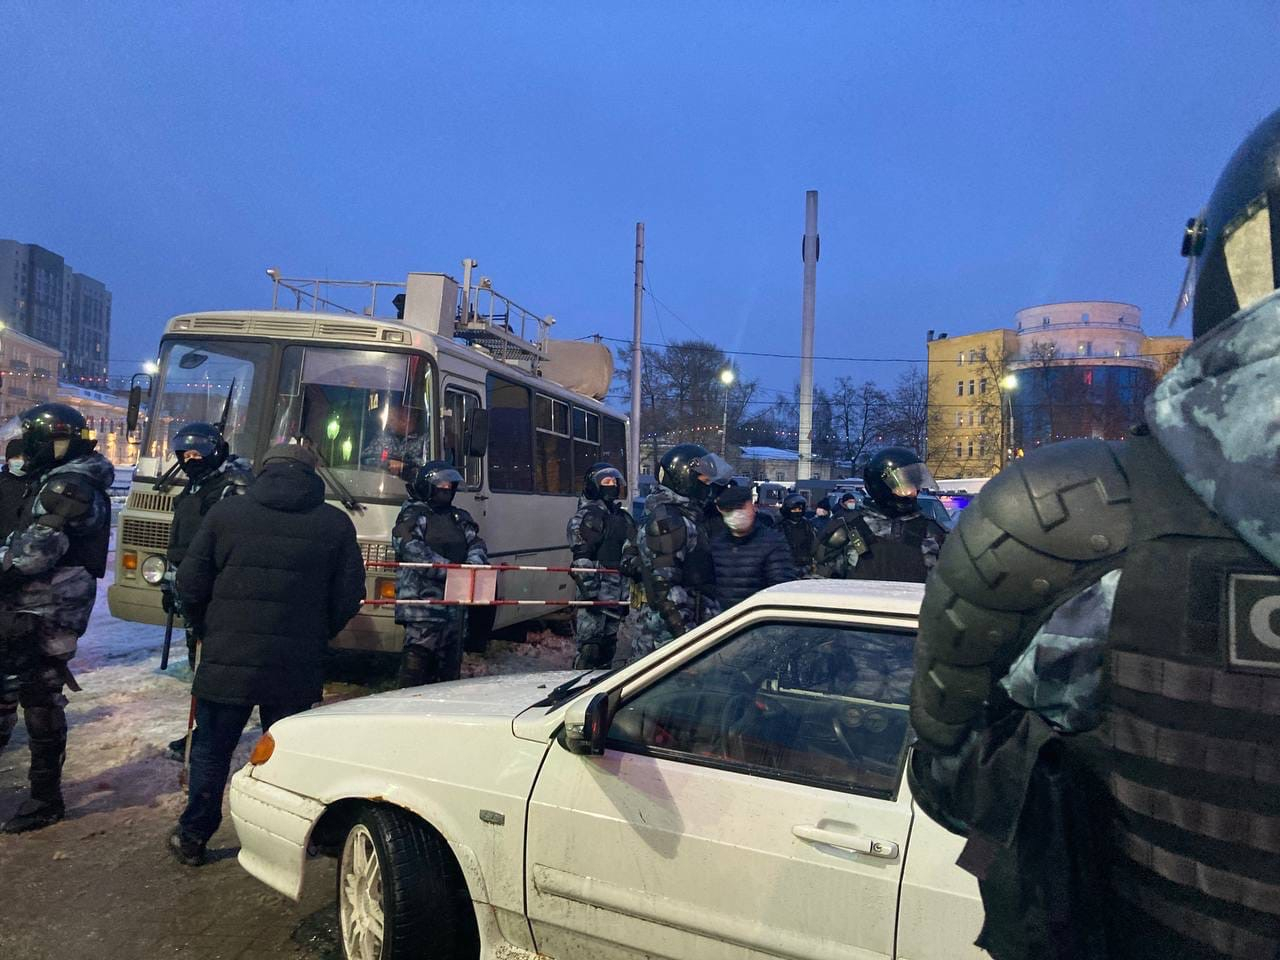 Правительство Рязанской области рассылает предупреждения о наказании за участие в несанкционированных митингах